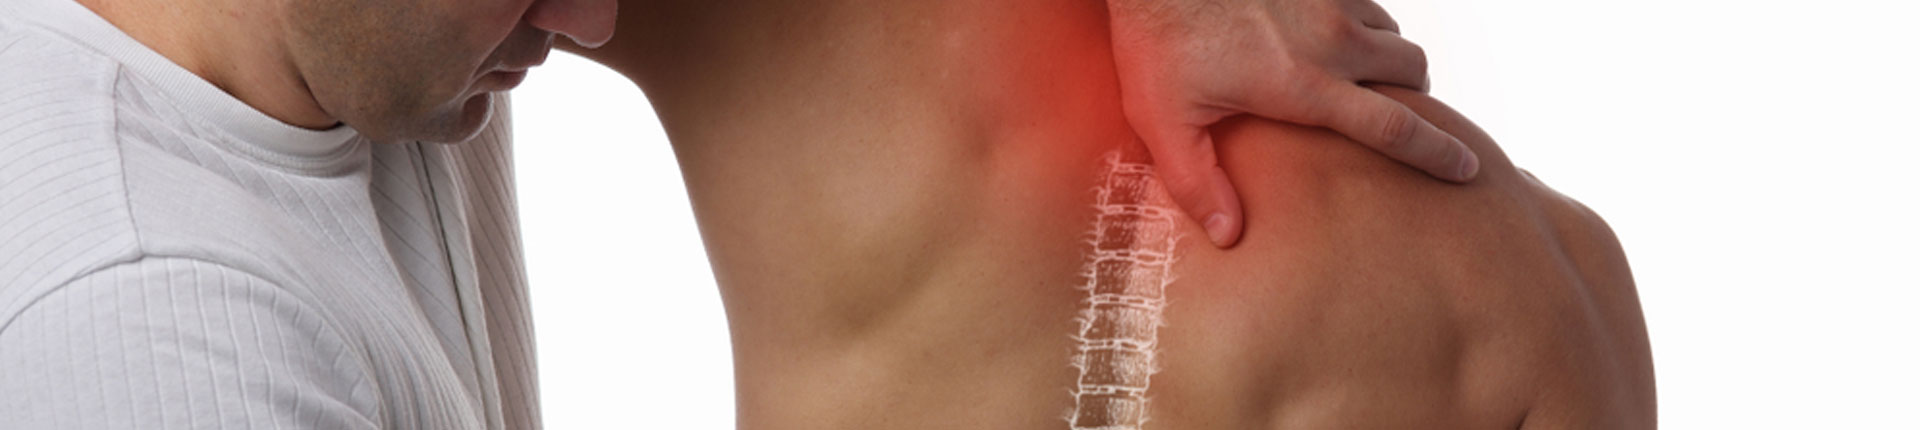 Kręgarstwo, chiropraktyka - czy ma to sens? Zalety i przeciwwskazania